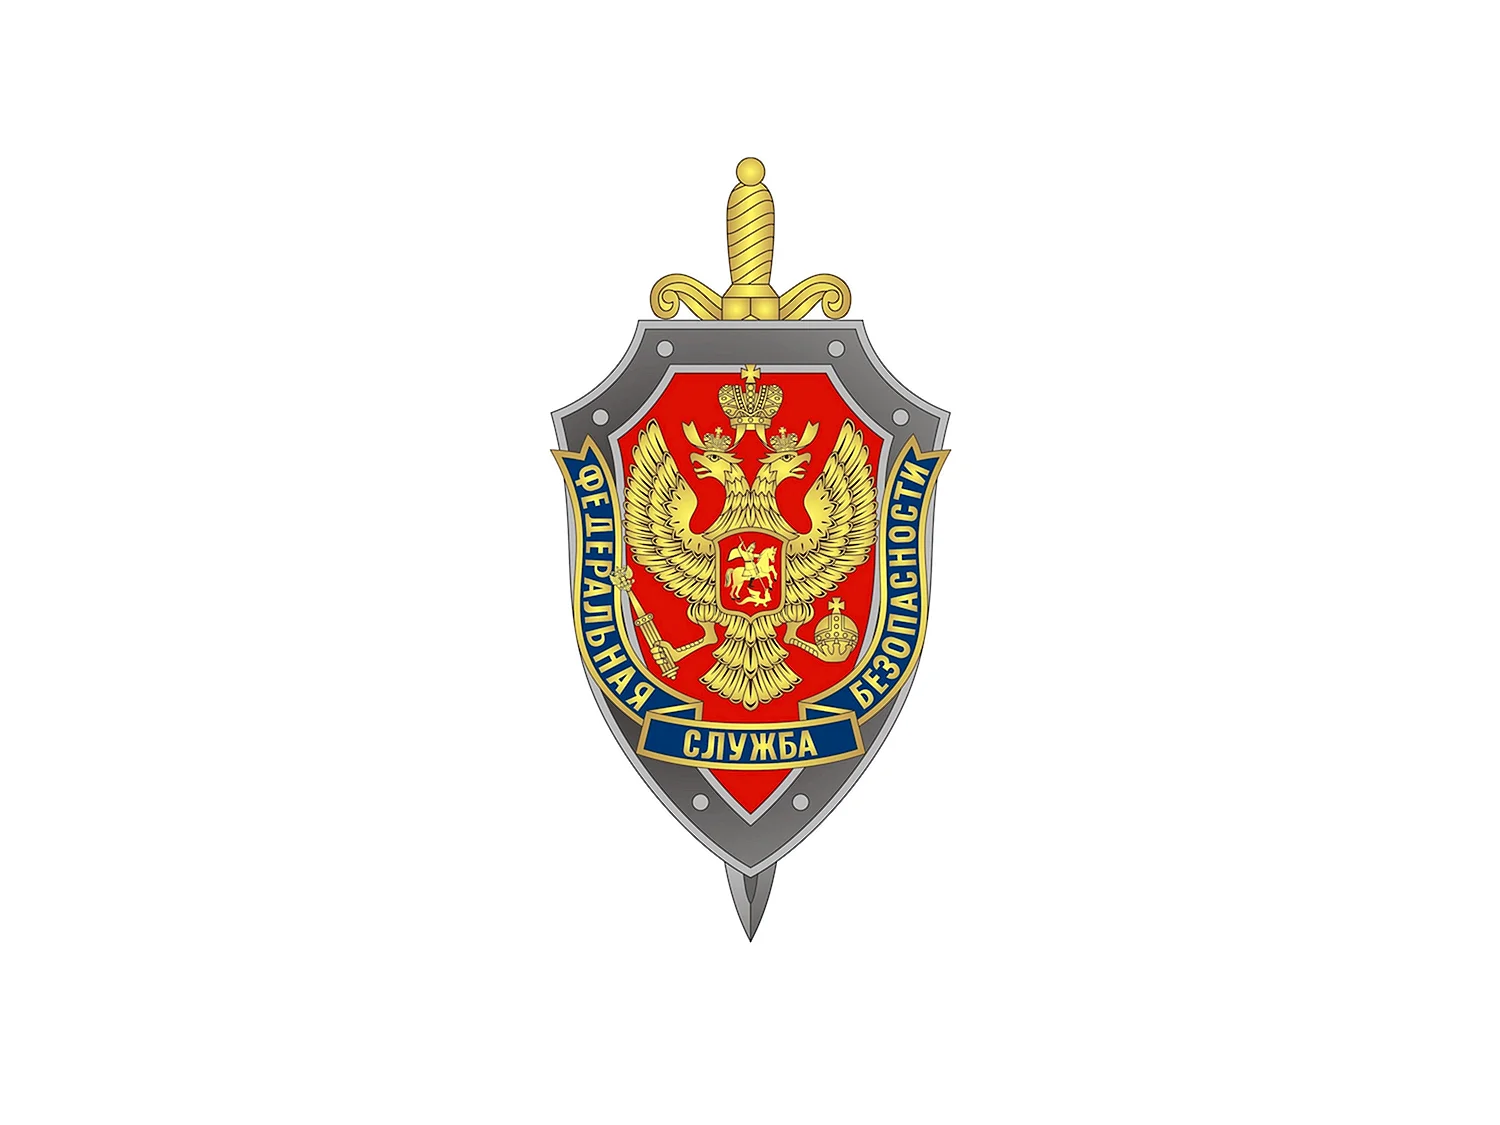 Федеральная служба безопасности правоохранительный орган. Федеральная служба безопасности Российской Федерации лого. Герб УФСБ России.